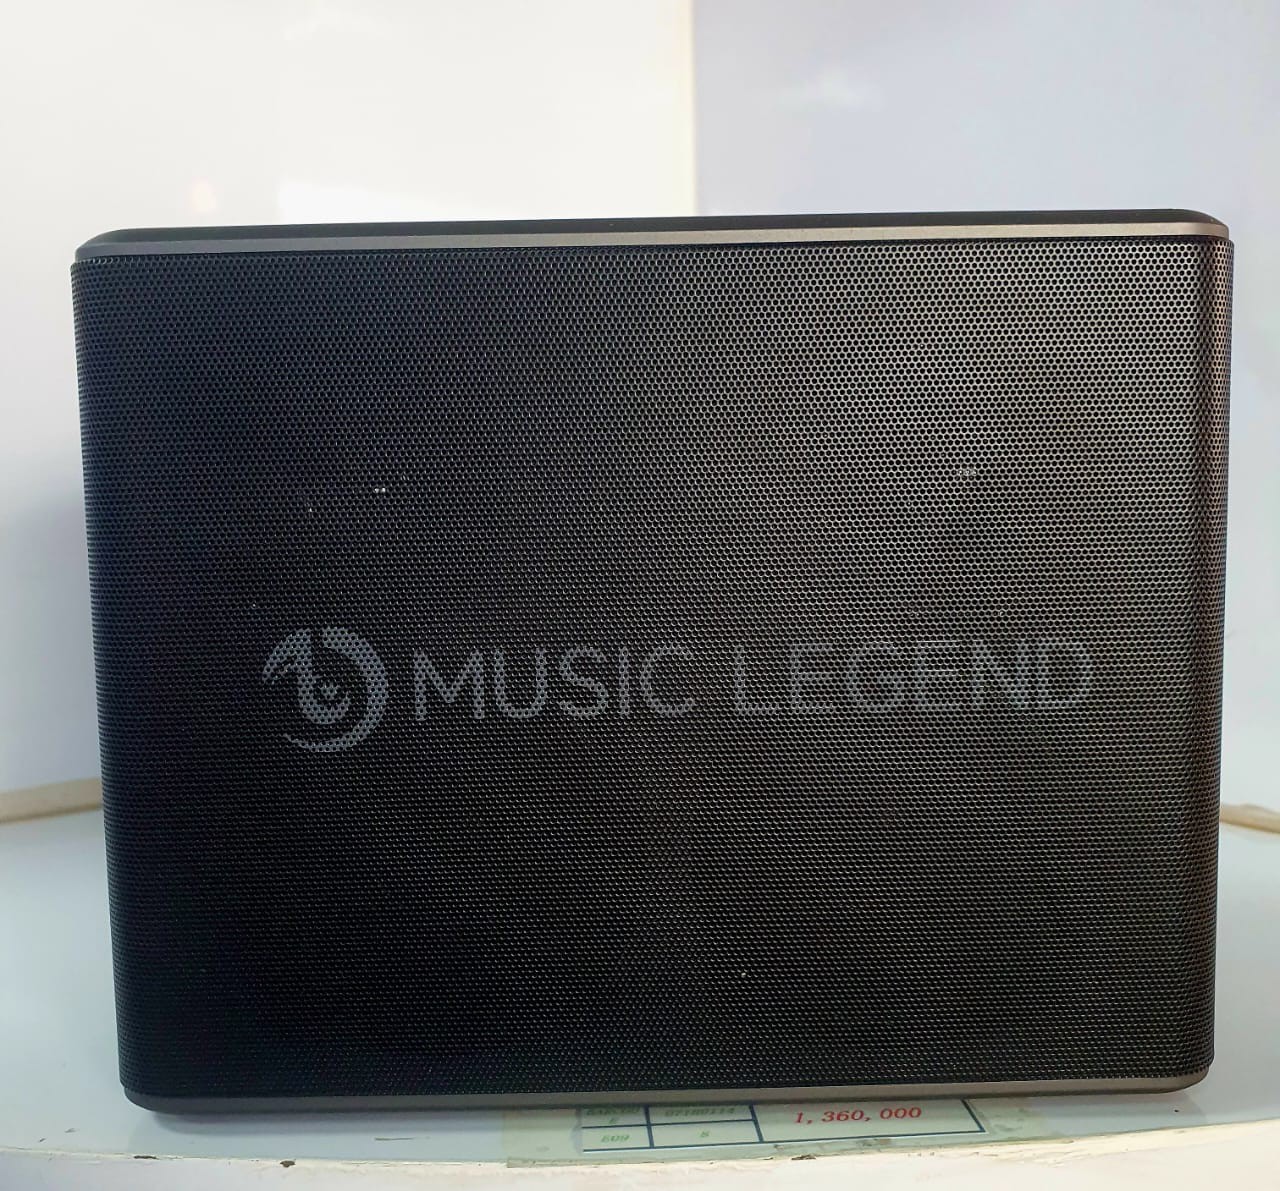 ລຳໂພງ Bluetooth  Music legend,  ອັບເກດໃໝ່ທຸກຟັງຊັນ, ສຽງດີໄດ້ມາດຕະຖານ, ສຽງດີເບສນຸ້ມໃຫ້ສຽງໄດ້ຮອບທິດທາງ.